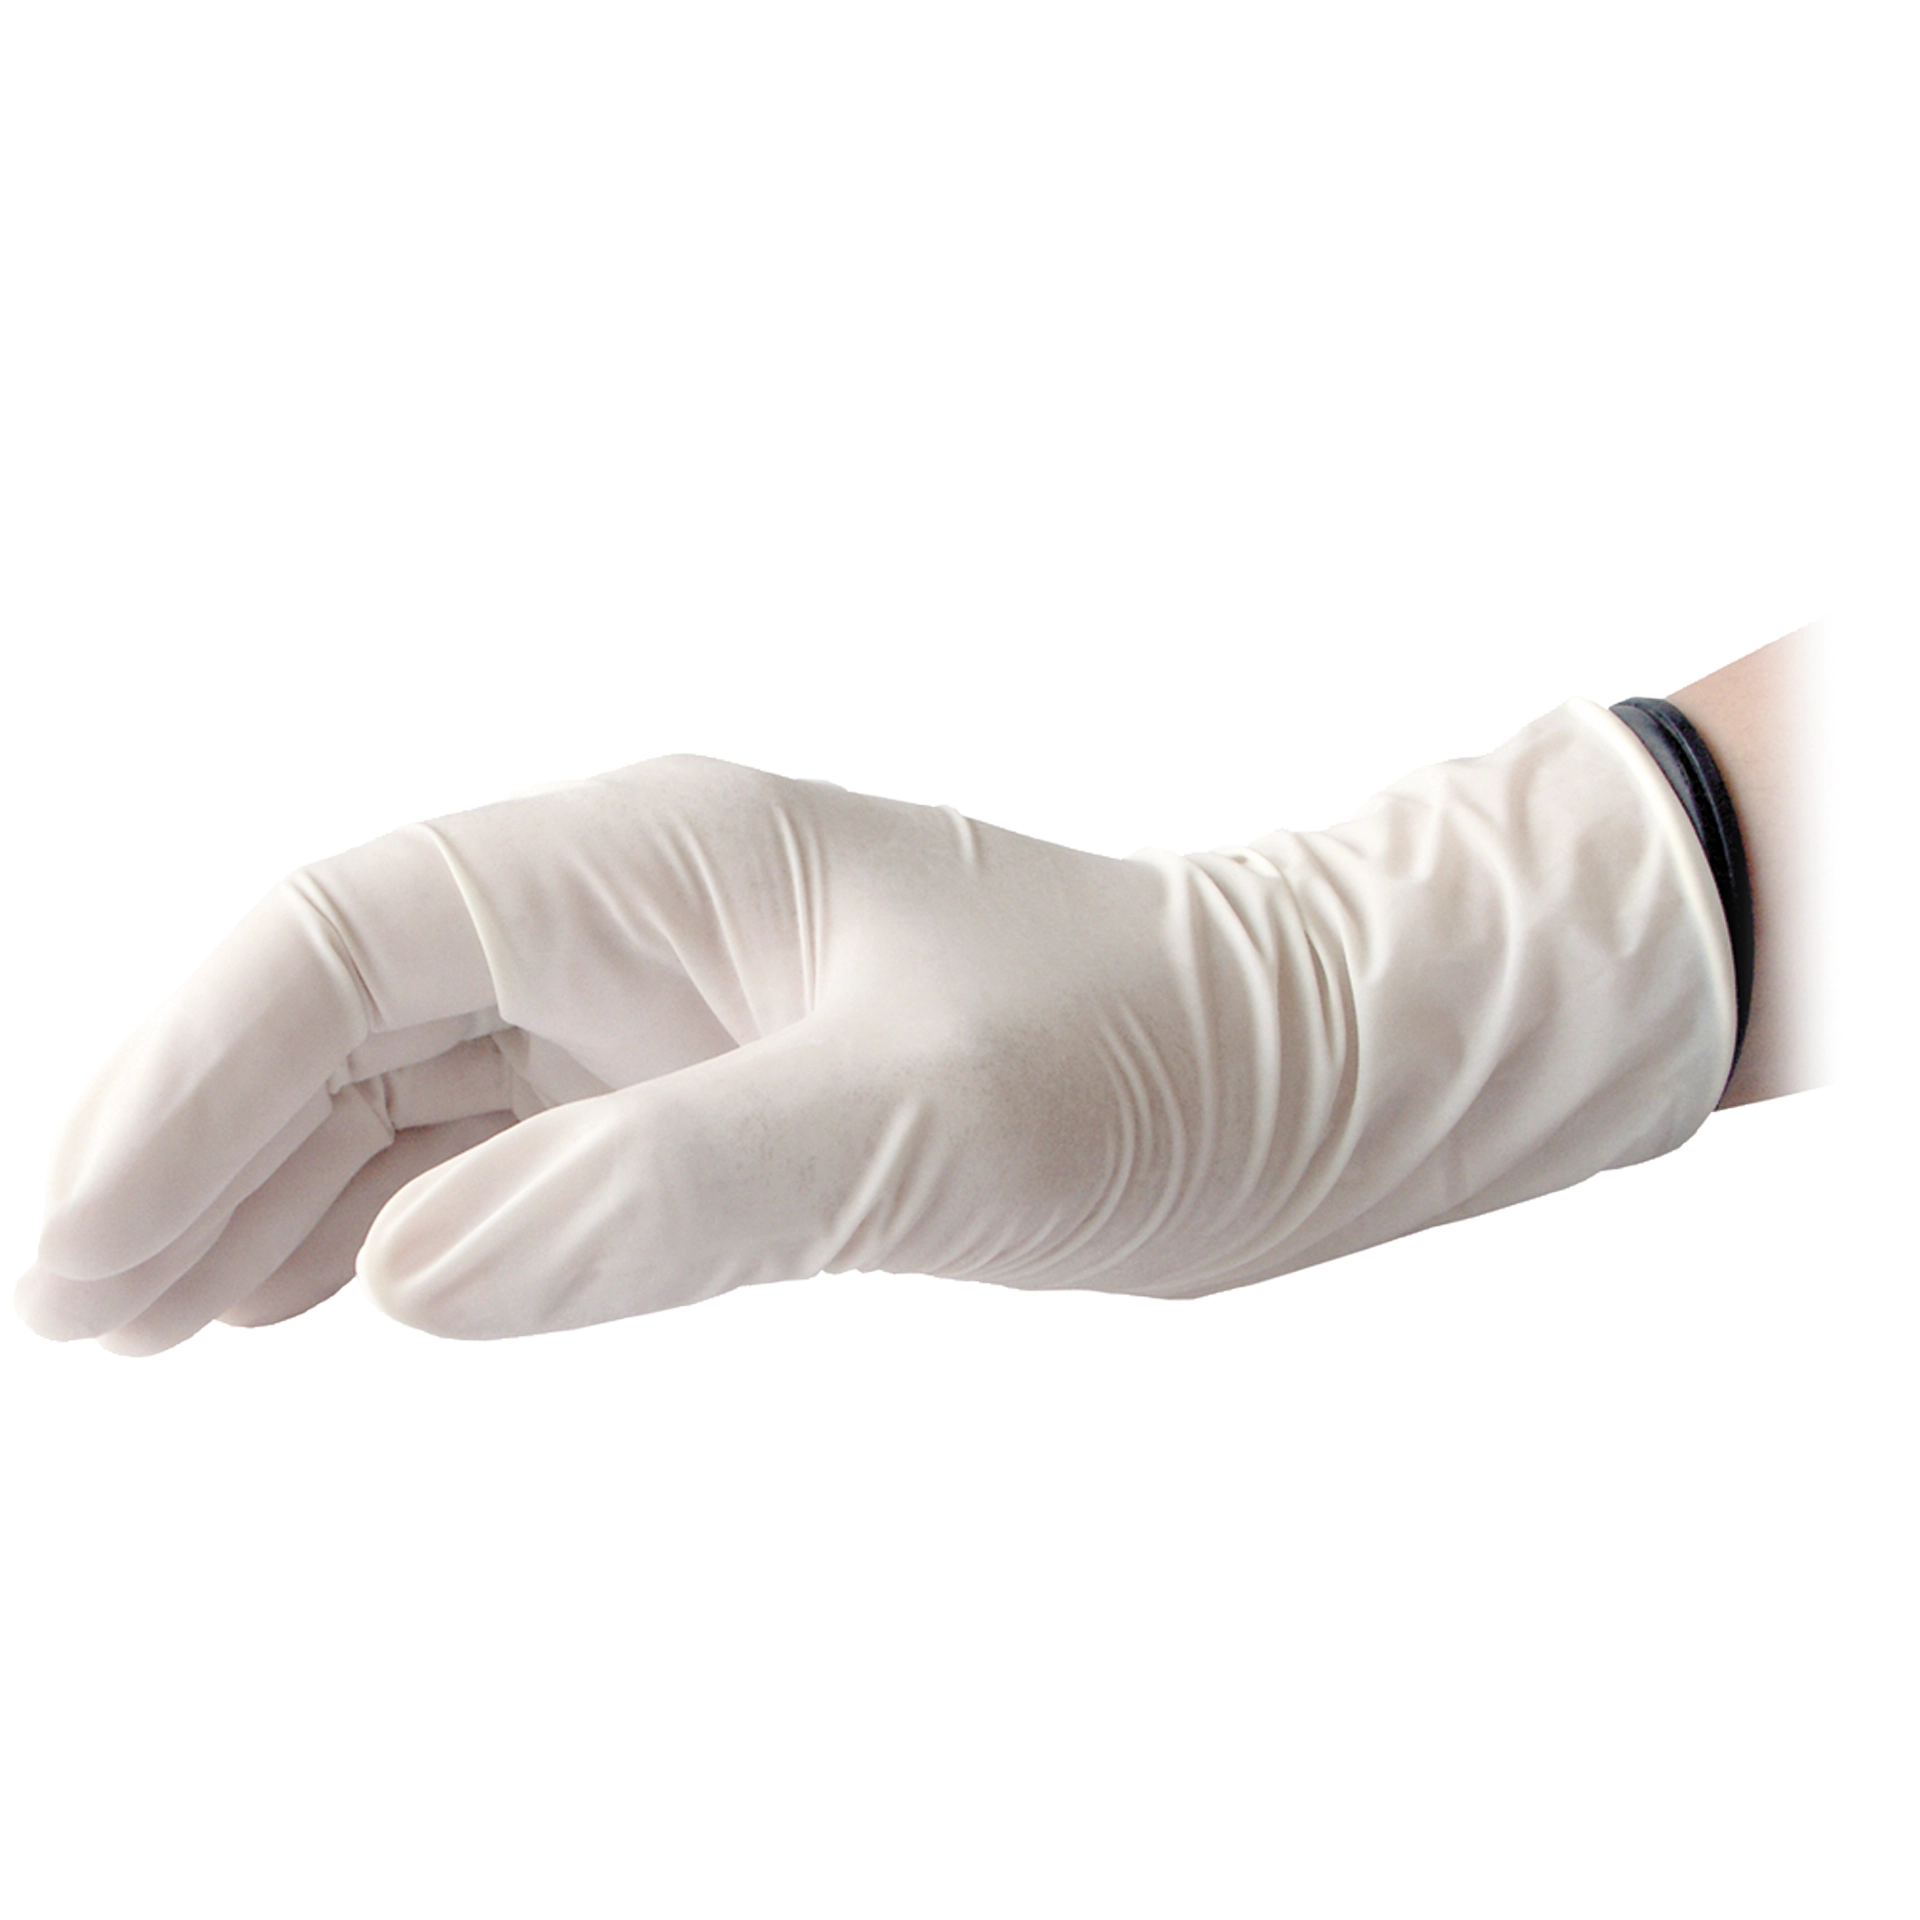 Handschuhe Latex | weiß Größe L | 100 Stk.